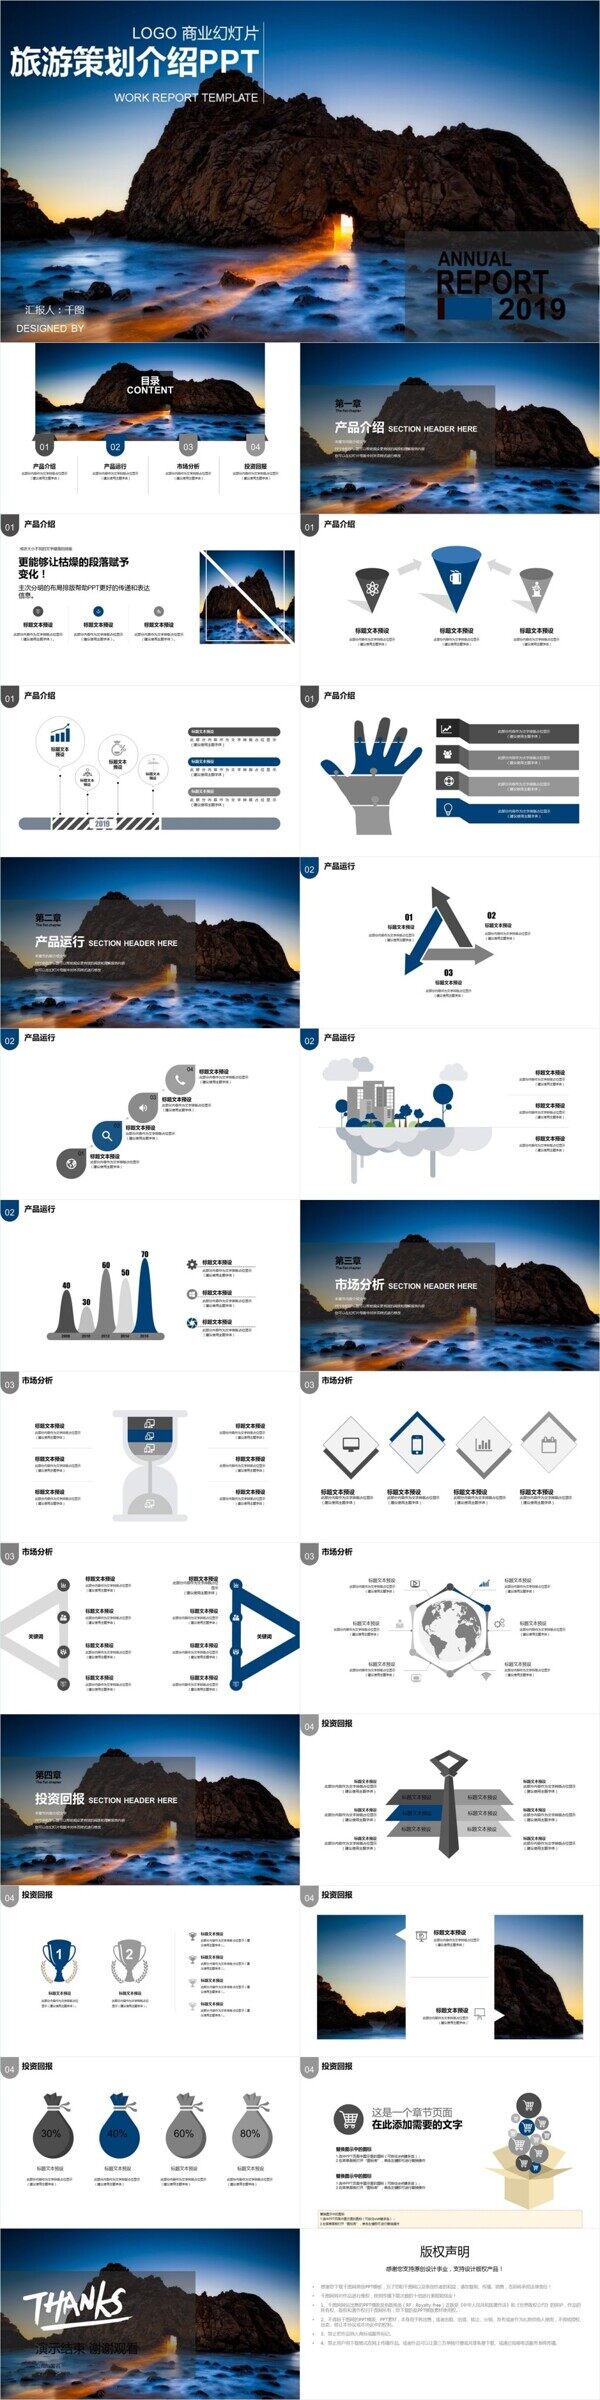 商务蓝旅游年终策划介绍PPT模板设计